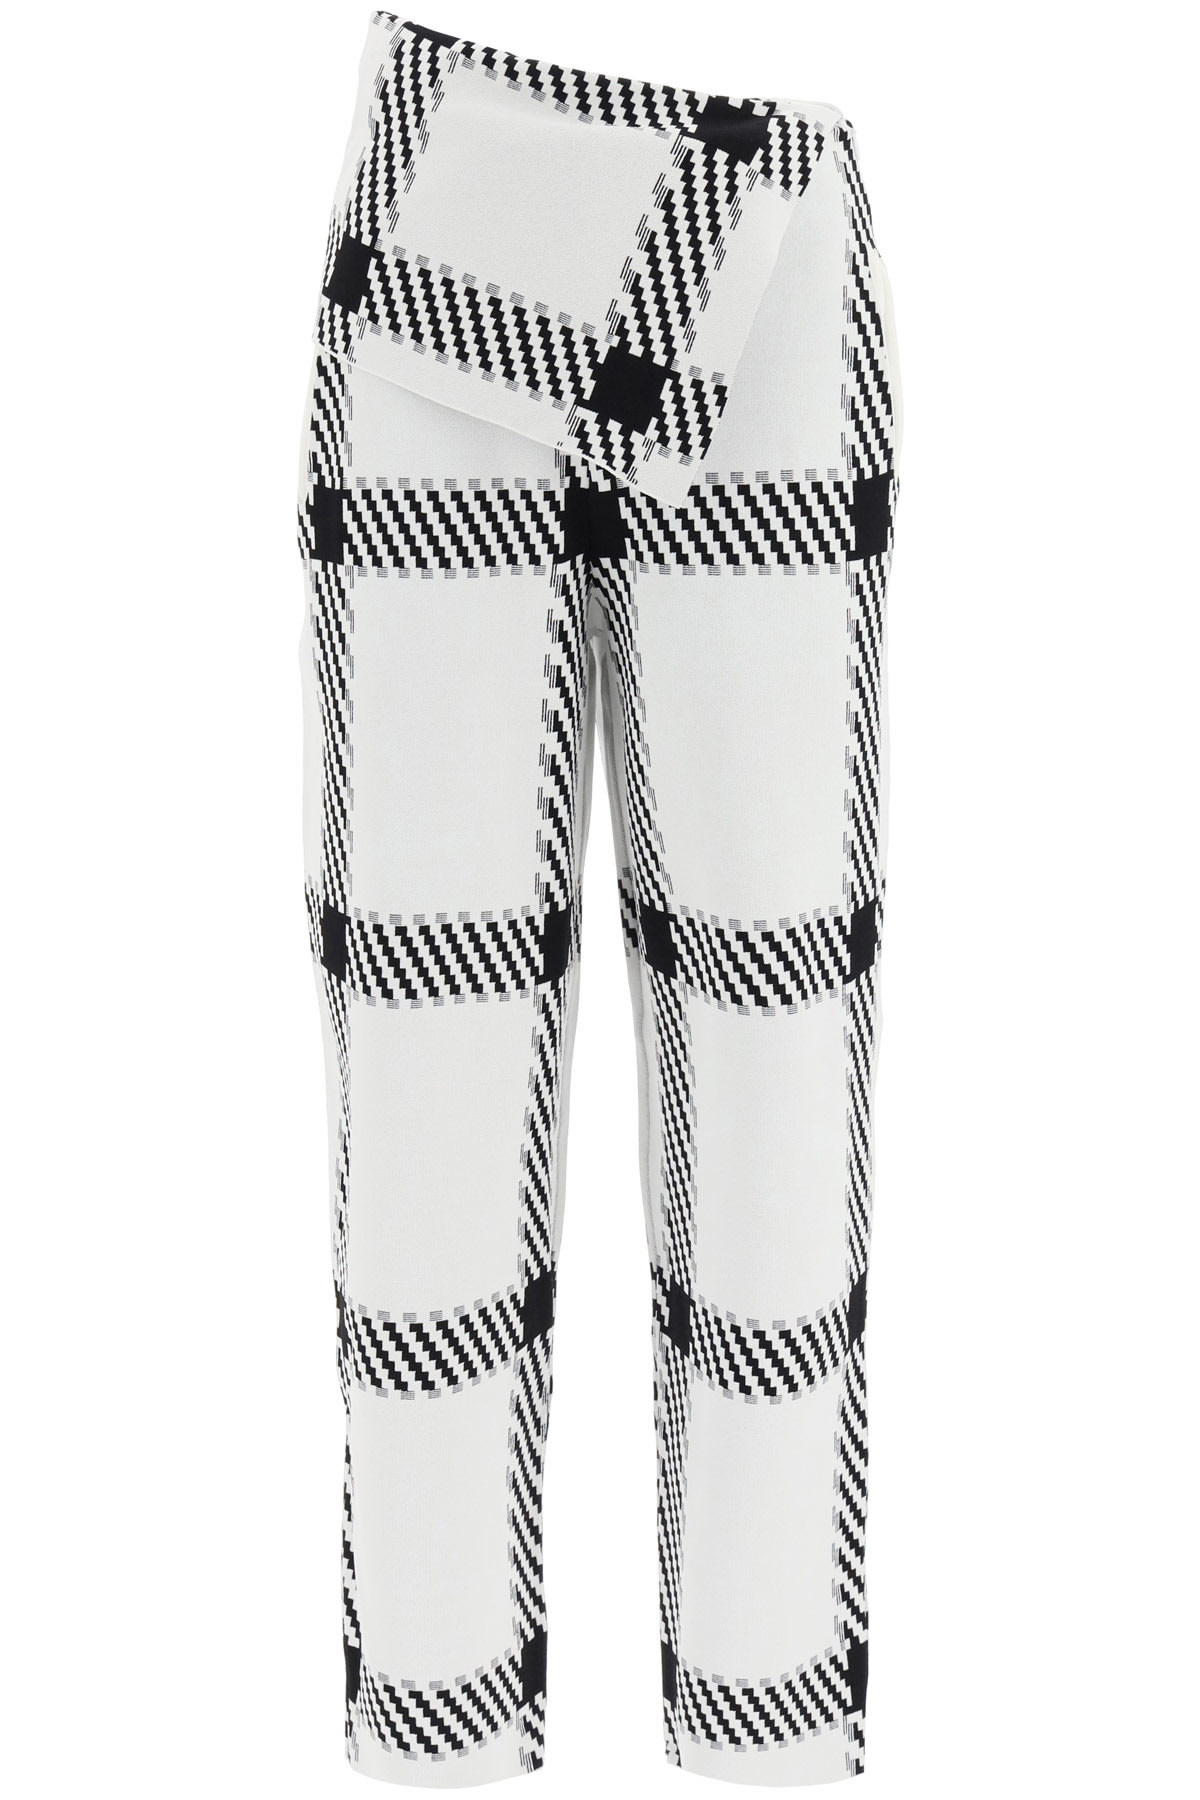 Stella McCartney Checkered Jersey Trousers